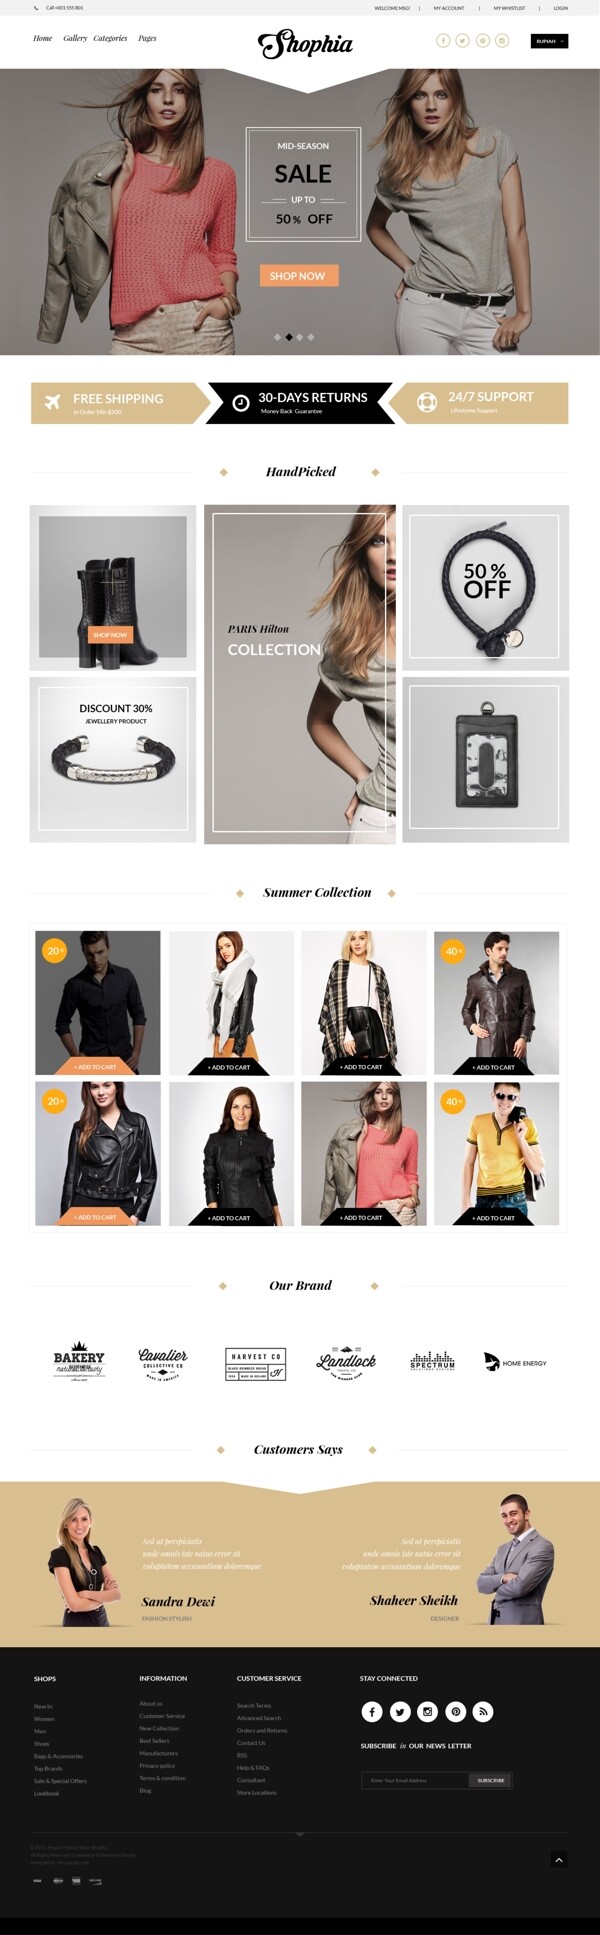 服装服饰简洁时尚网页UI设计模板